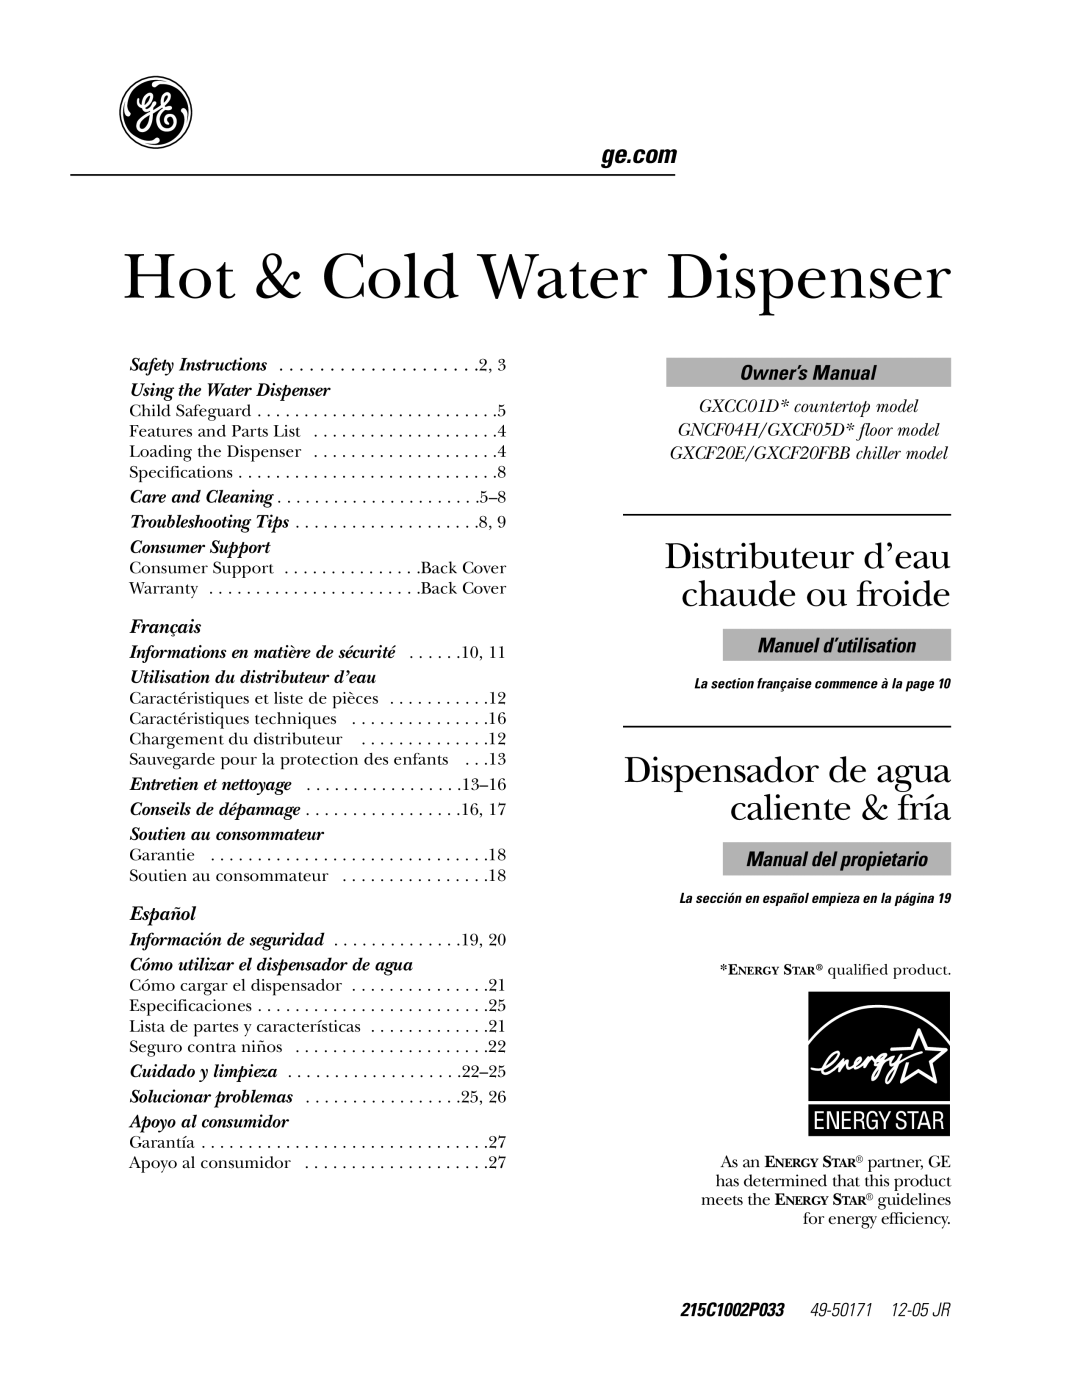 GE GXCF20E/GXF2OFBB owner manual 215C1002P033, Hot & Cold Water Dispenser, Distributeur d’eau chaude ou froide, Français 